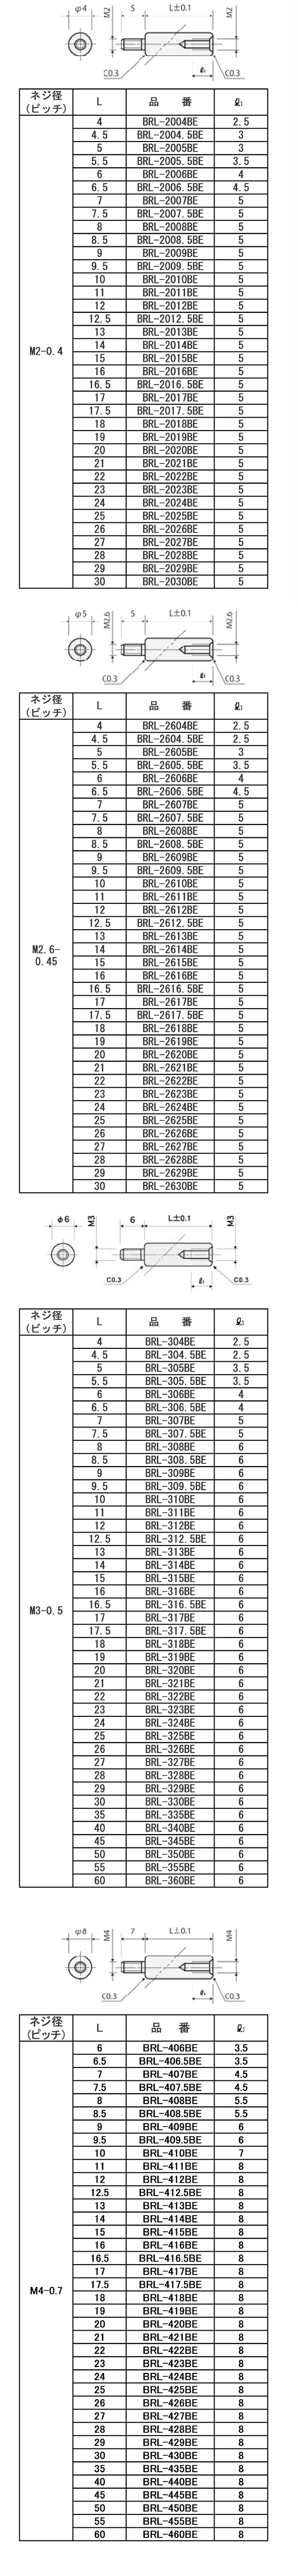 鉛レス快削アルミ(黒アルマイト) 丸型スペーサー オス・メスねじ BRL-BE(ネジ径x長さ) 製品規格